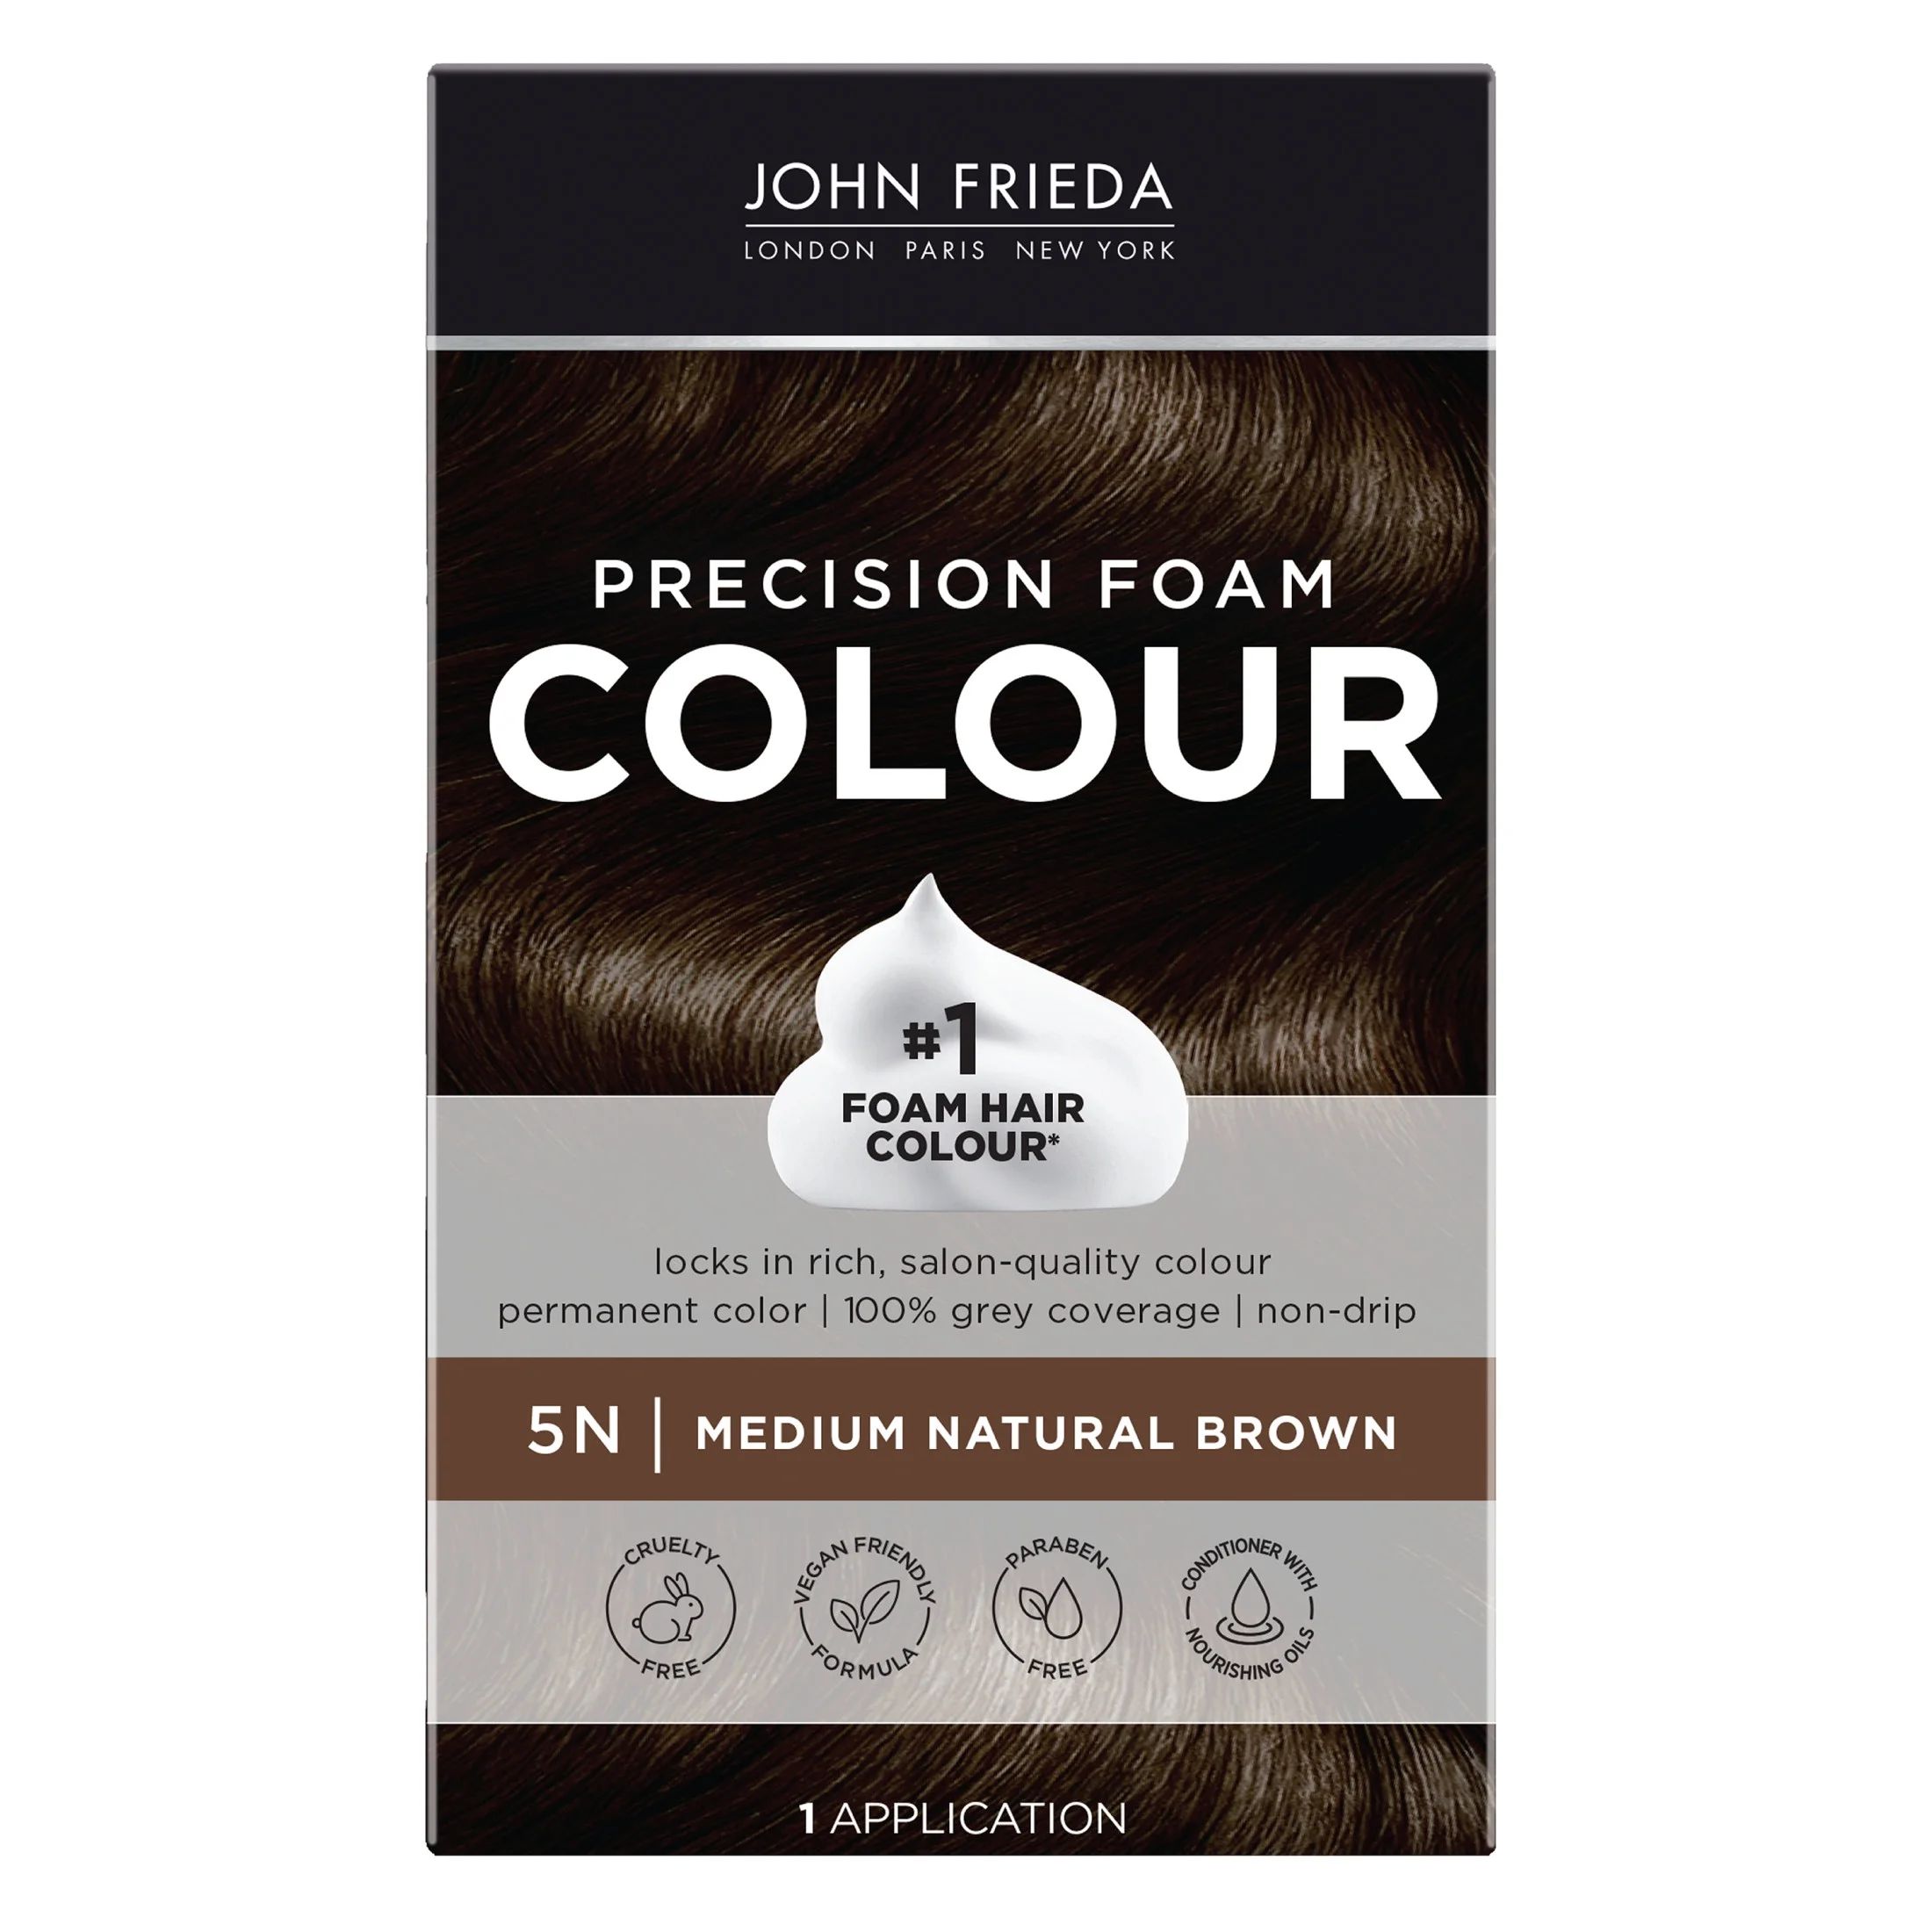 John Frieda Precision Foam Hair Color Kit, Brown Hair Dye, 5N Medium Natural Brown Hair Color, 1 ... | Walmart (US)